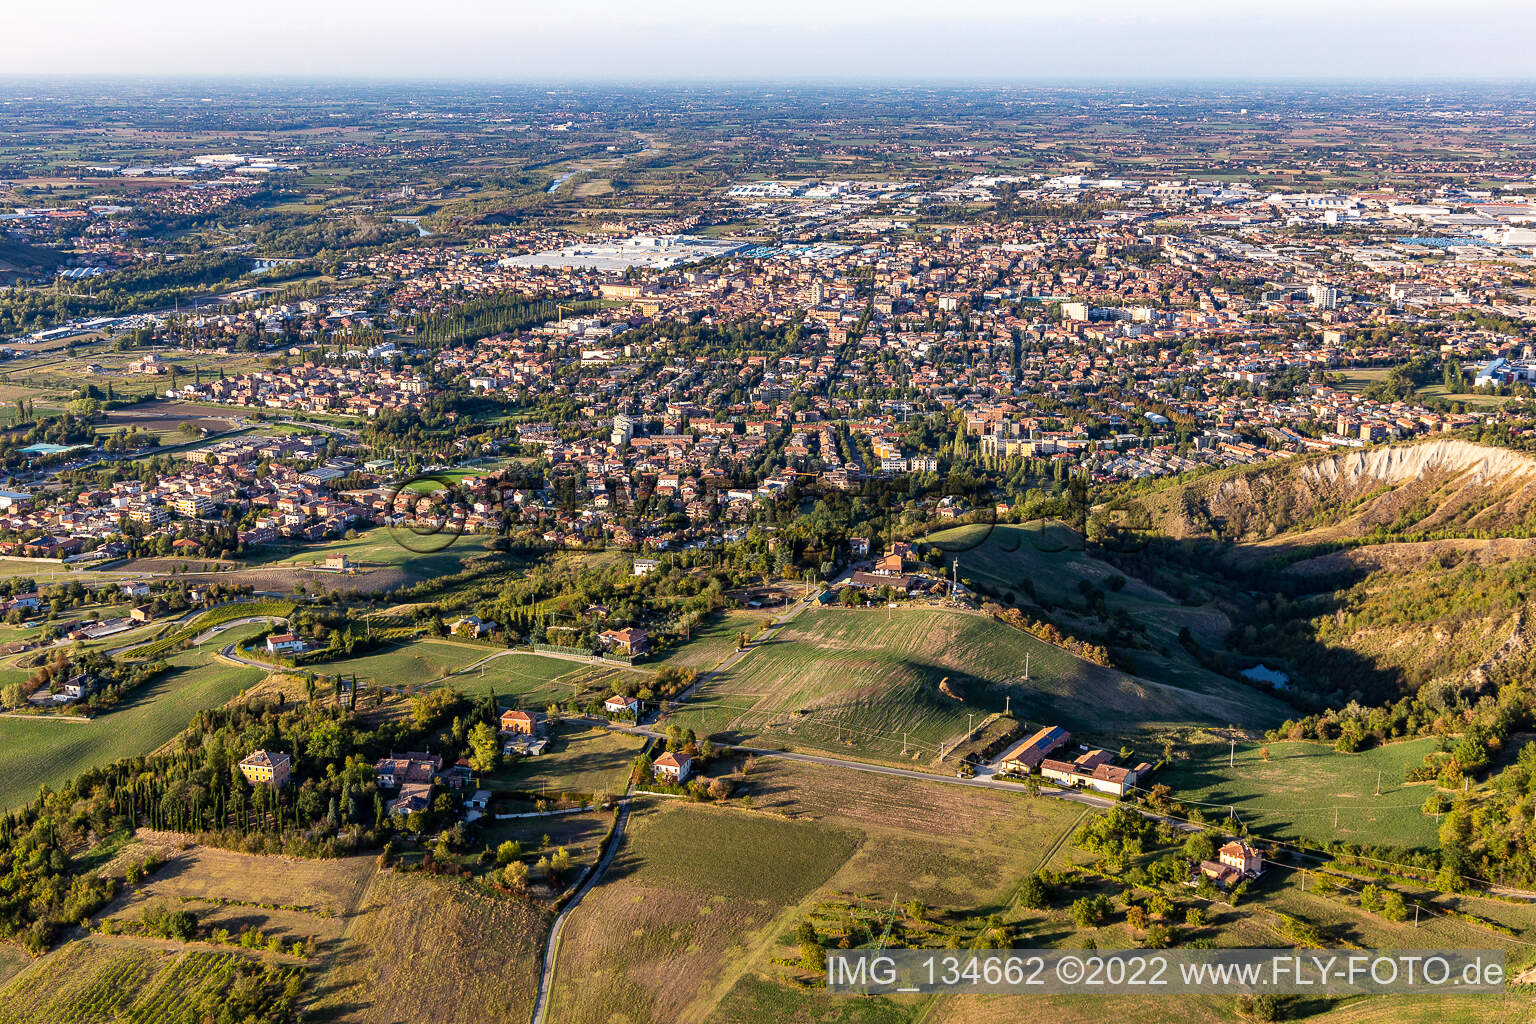 Vue aérienne de Sassuolo dans le département Modena, Italie